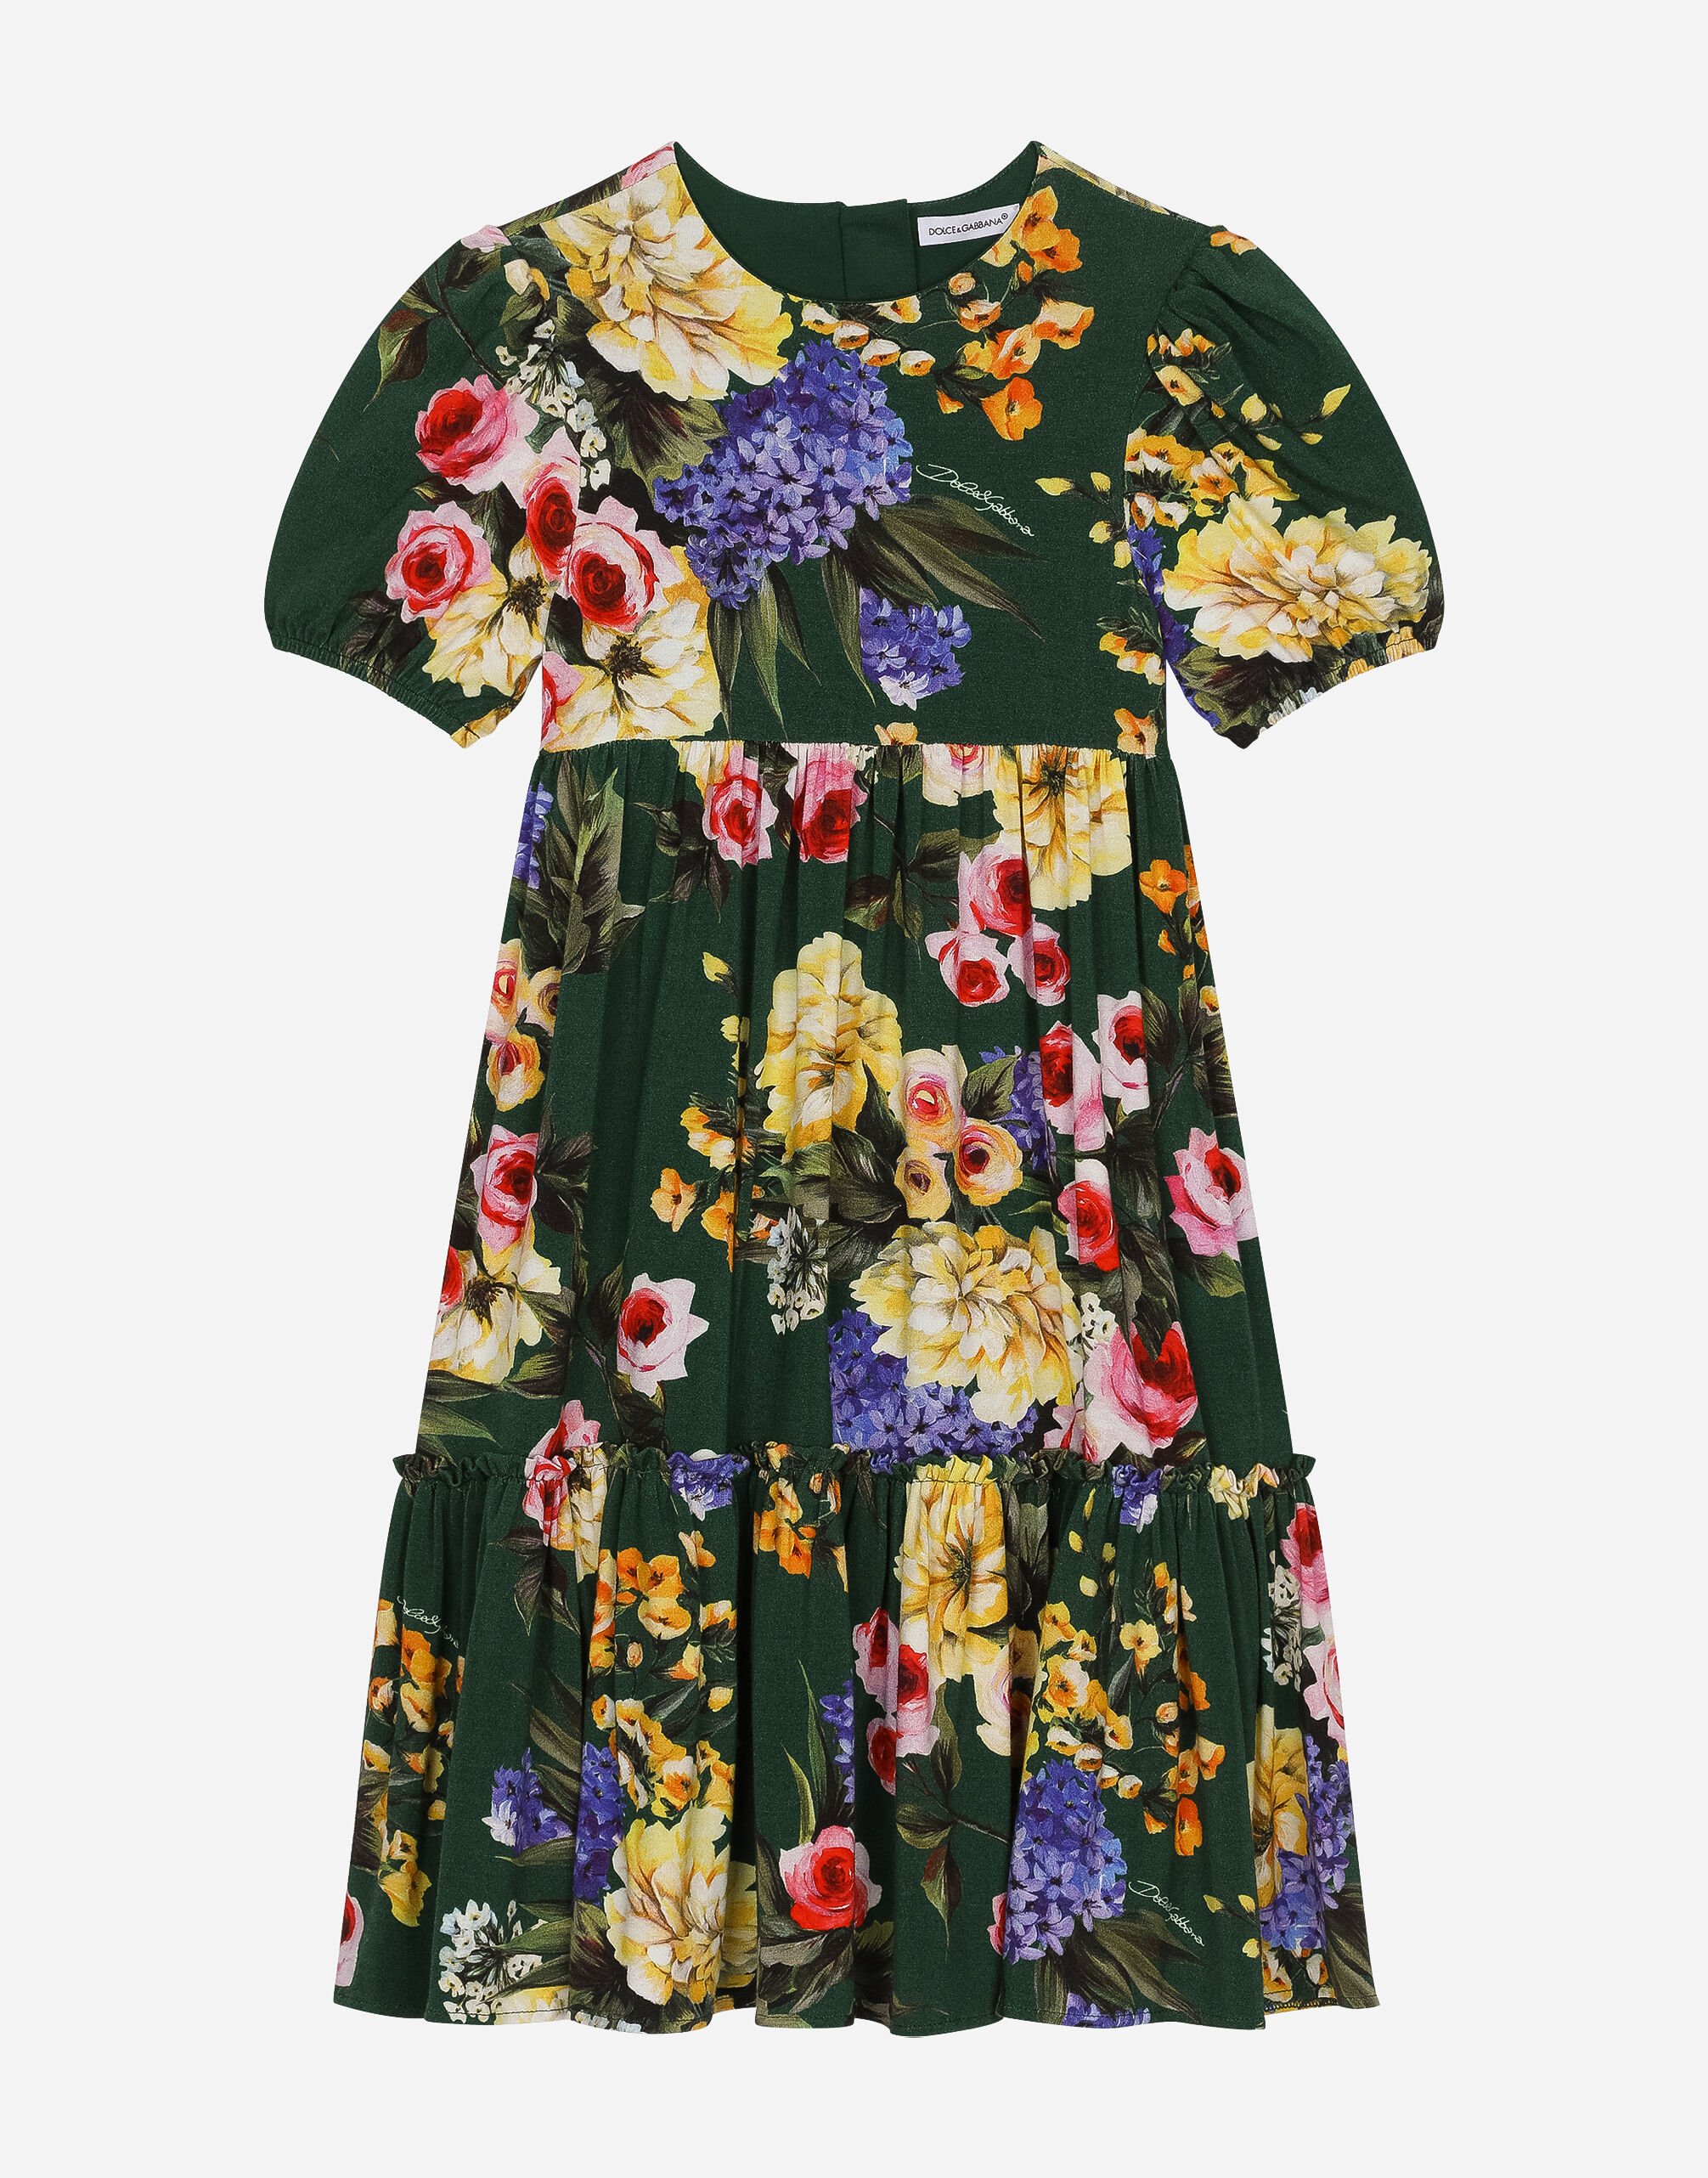 Dolce & Gabbana Garden-print jersey dress Print L53DI6HS5QR